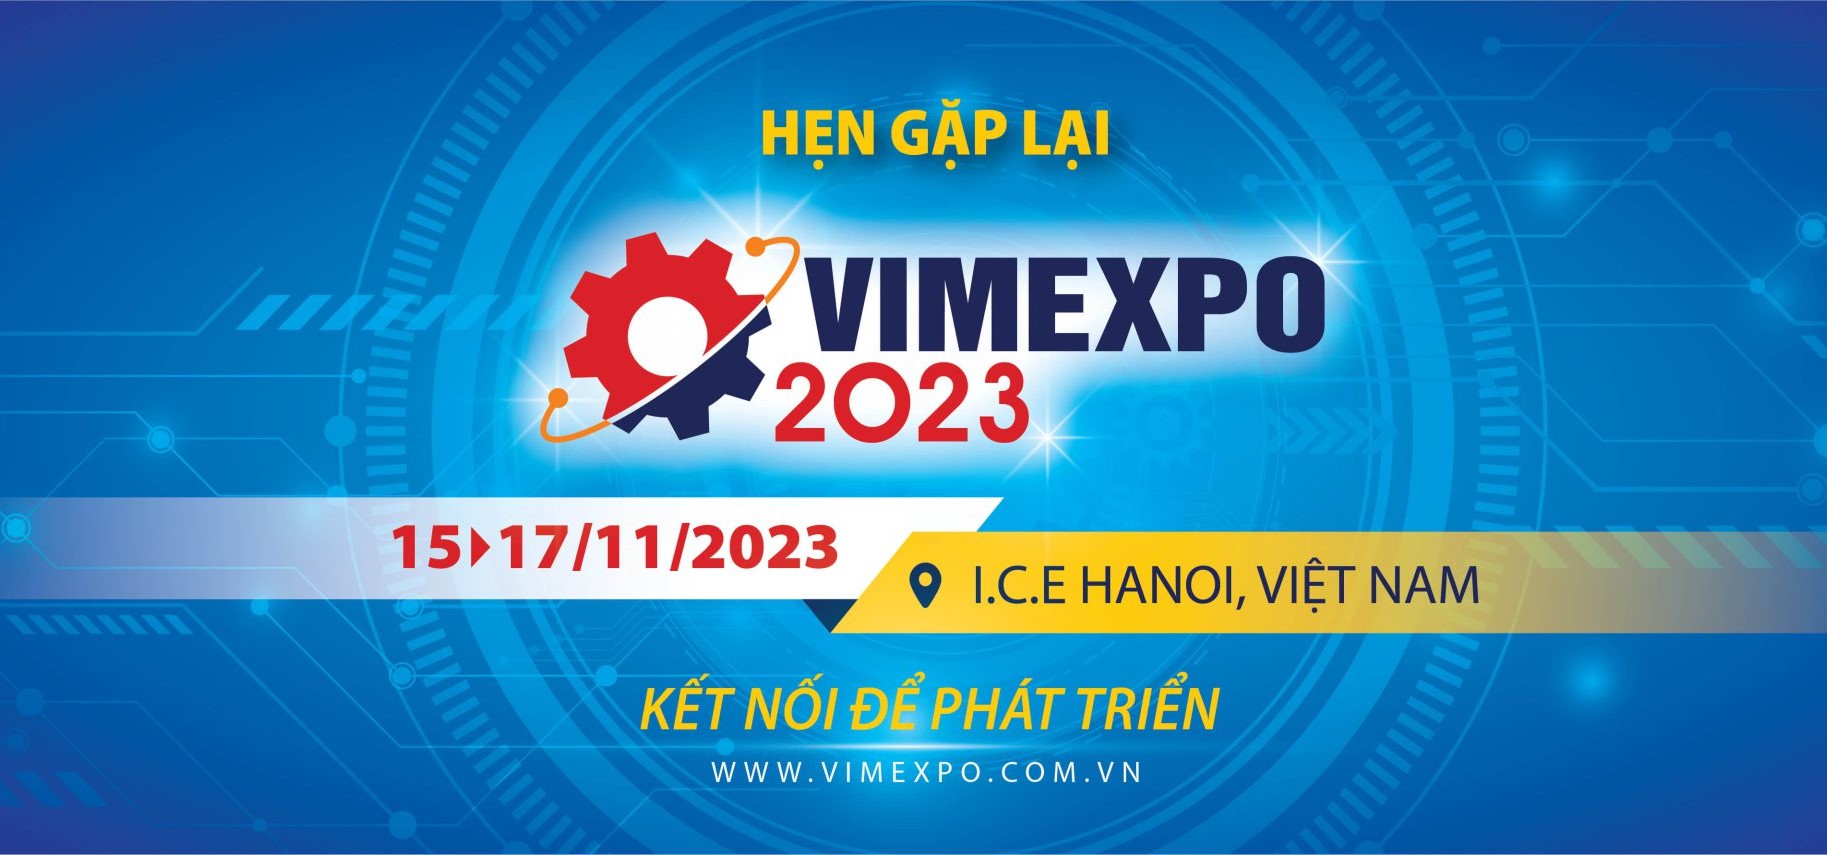 VIMEXPO 2023